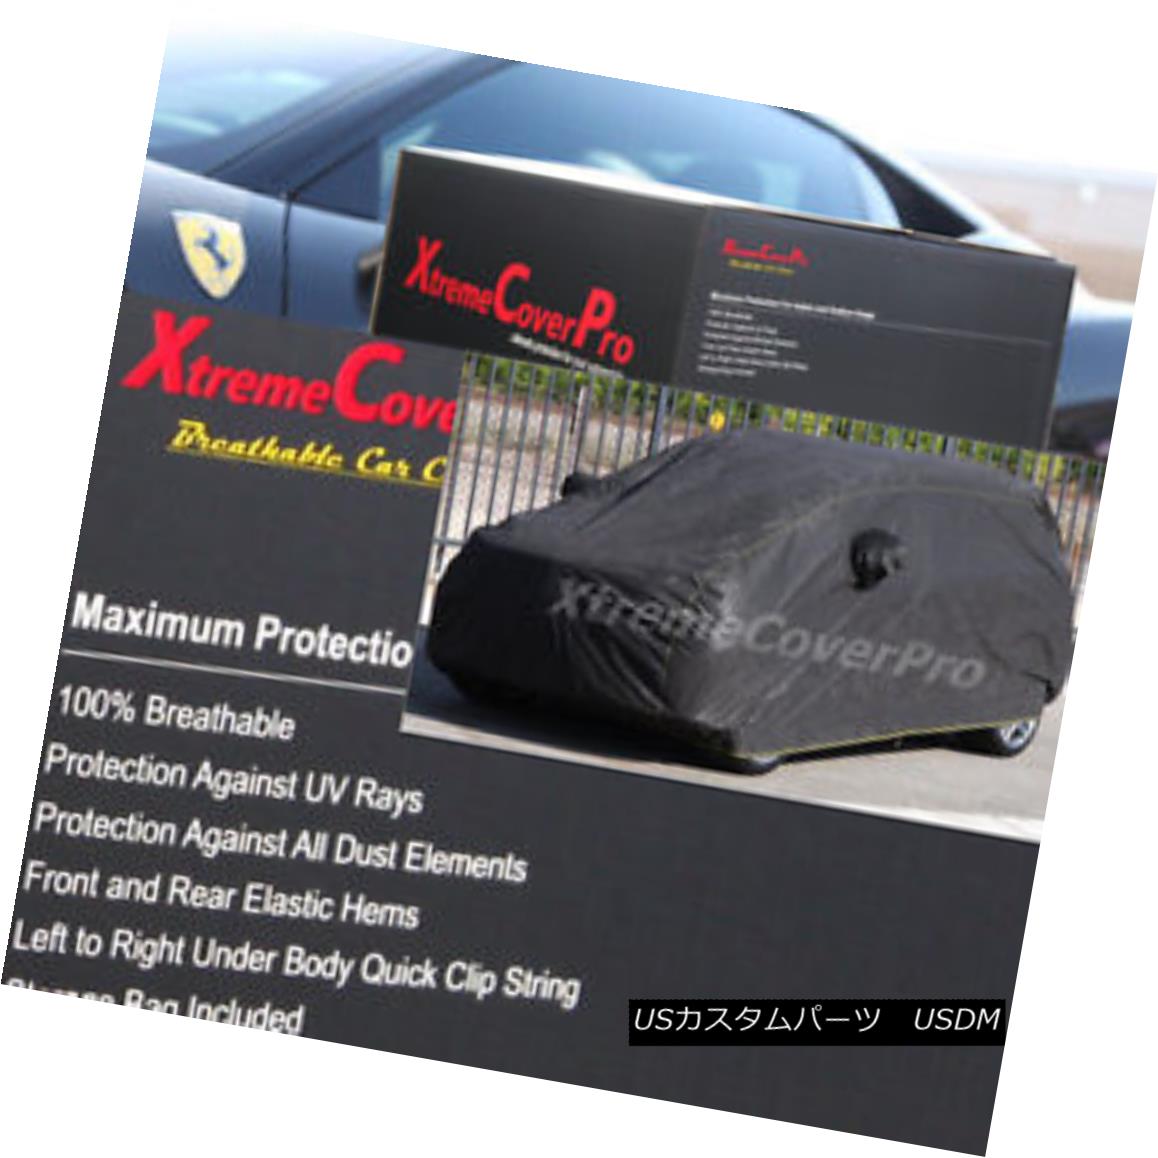 2015 LEXUS RX350 RX450H Breathable Car Cover w/Mirror Pockets - Blackカテゴリカーカバー状態新品メーカー車種発送詳細送料一律 1000円（※北海道、沖縄、離島は省く）商品詳細輸入商品の為、英語表記となります。 Condition: New Type: Full Coverage Cover Length (ft.): 181-191 inches Fit: Universal Fit Warranty: Limited Lifetime through Manufacturer Material: 80g per Meter^2 non-woven fabric Mirror Pocket: Yes Features: Elastic Hem, Non-Abrasive Lining, Under Body Strap, Mirror Pockets Manufacturer Part Number: DOES NOT APPLY Brand: XtremeCoverPro FITMENT: PLEASE REFER TO AUCTION TITLE MATCHES YOUR VEHICLE Primary Color: Black Color: Black※以下の注意事項をご理解頂いた上で、ご入札下さい※■海外輸入品の為、NC,NRでお願い致します。■フィッテングや車検対応の有無については、画像と説明文よりお客様の方にてご判断をお願いしております。■USのカスタムパーツは国内の純正パーツを取り外した後、接続コネクタが必ずしも一致するとは限らず、加工が必要な場合がございます。■商品説明文中に英語にて”保障”に関する記載があっても適応はされませんので、ご理解ください。■初期不良（到着より7日以内）のみ保証対象とします。ただし、取り付け後は、保証対象外とします。■海外倉庫から到着した製品を、再度国内で検品を行い、日本郵便または佐川急便にて発送となります。■お届けまでには、2〜3週間程頂いております。ただし、天候次第で多少遅れが発生する場合もあります。■商品落札後のお客様のご都合によるキャンセルはお断りしておりますが、商品落札金額の30％の手数料をいただいた場合のみお受けいたします。■他にもUSパーツを多数出品させて頂いておりますので、ご覧頂けたらと思います。■USパーツの輸入代行も行っておりますので、ショップに掲載されていない商品でもお探しする事が可能です!!お気軽にお問い合わせ下さい。&nbsp;